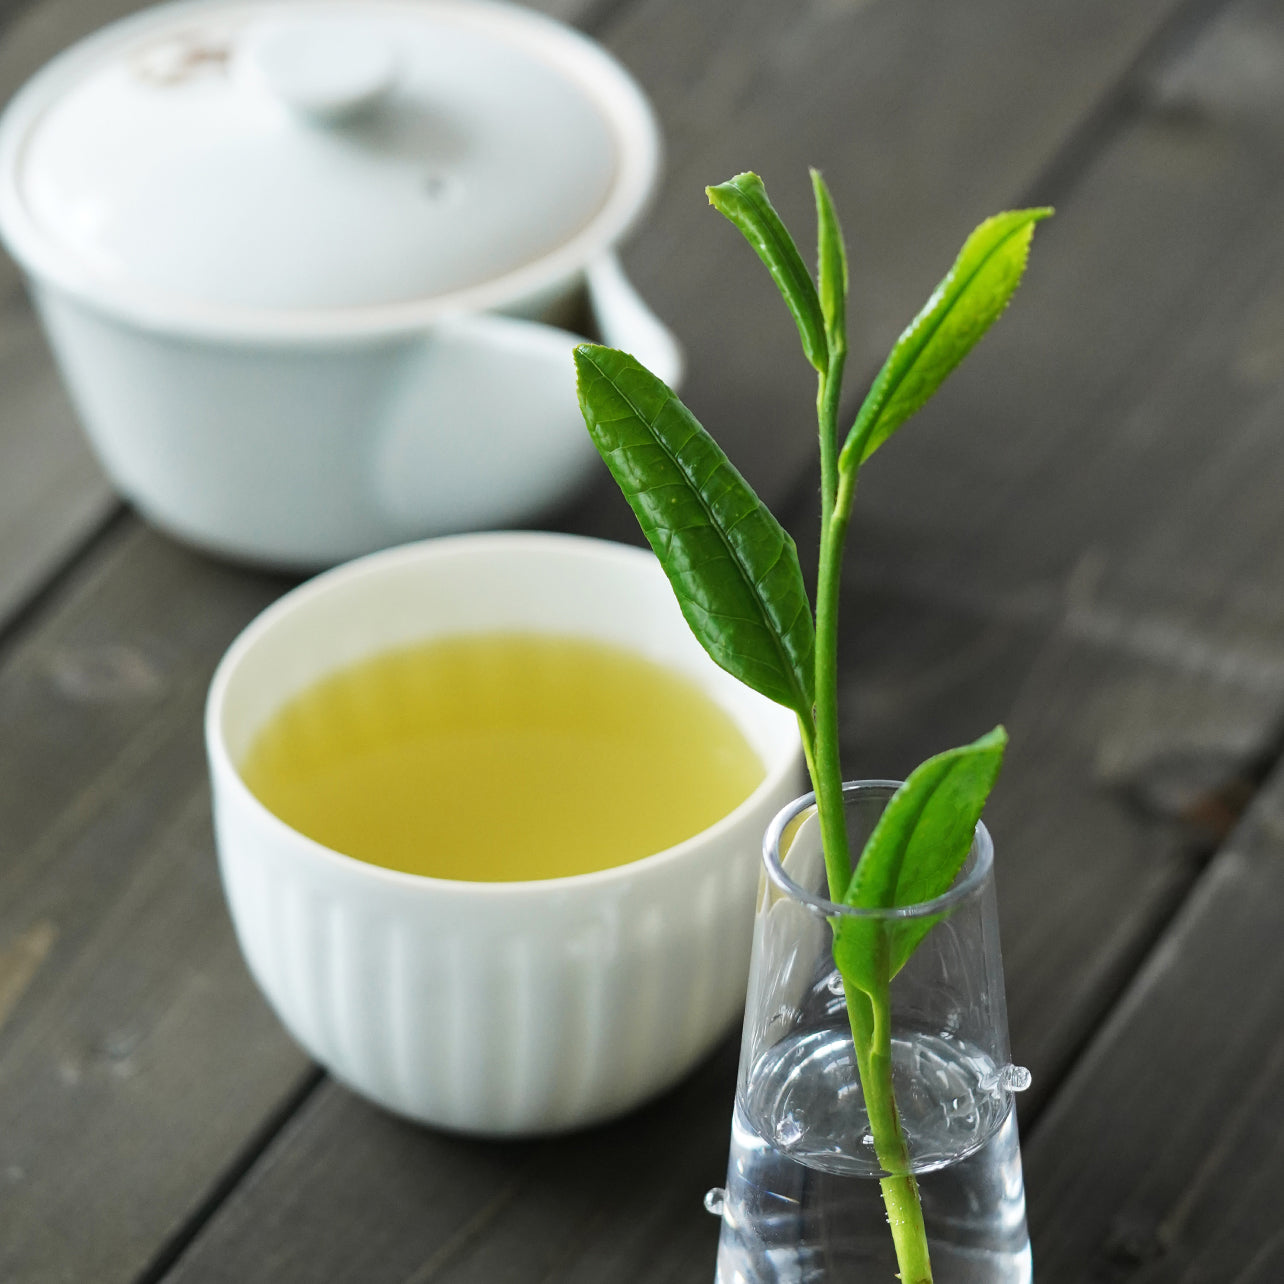 New tea [bamboo], 2 kinds of financier assortment